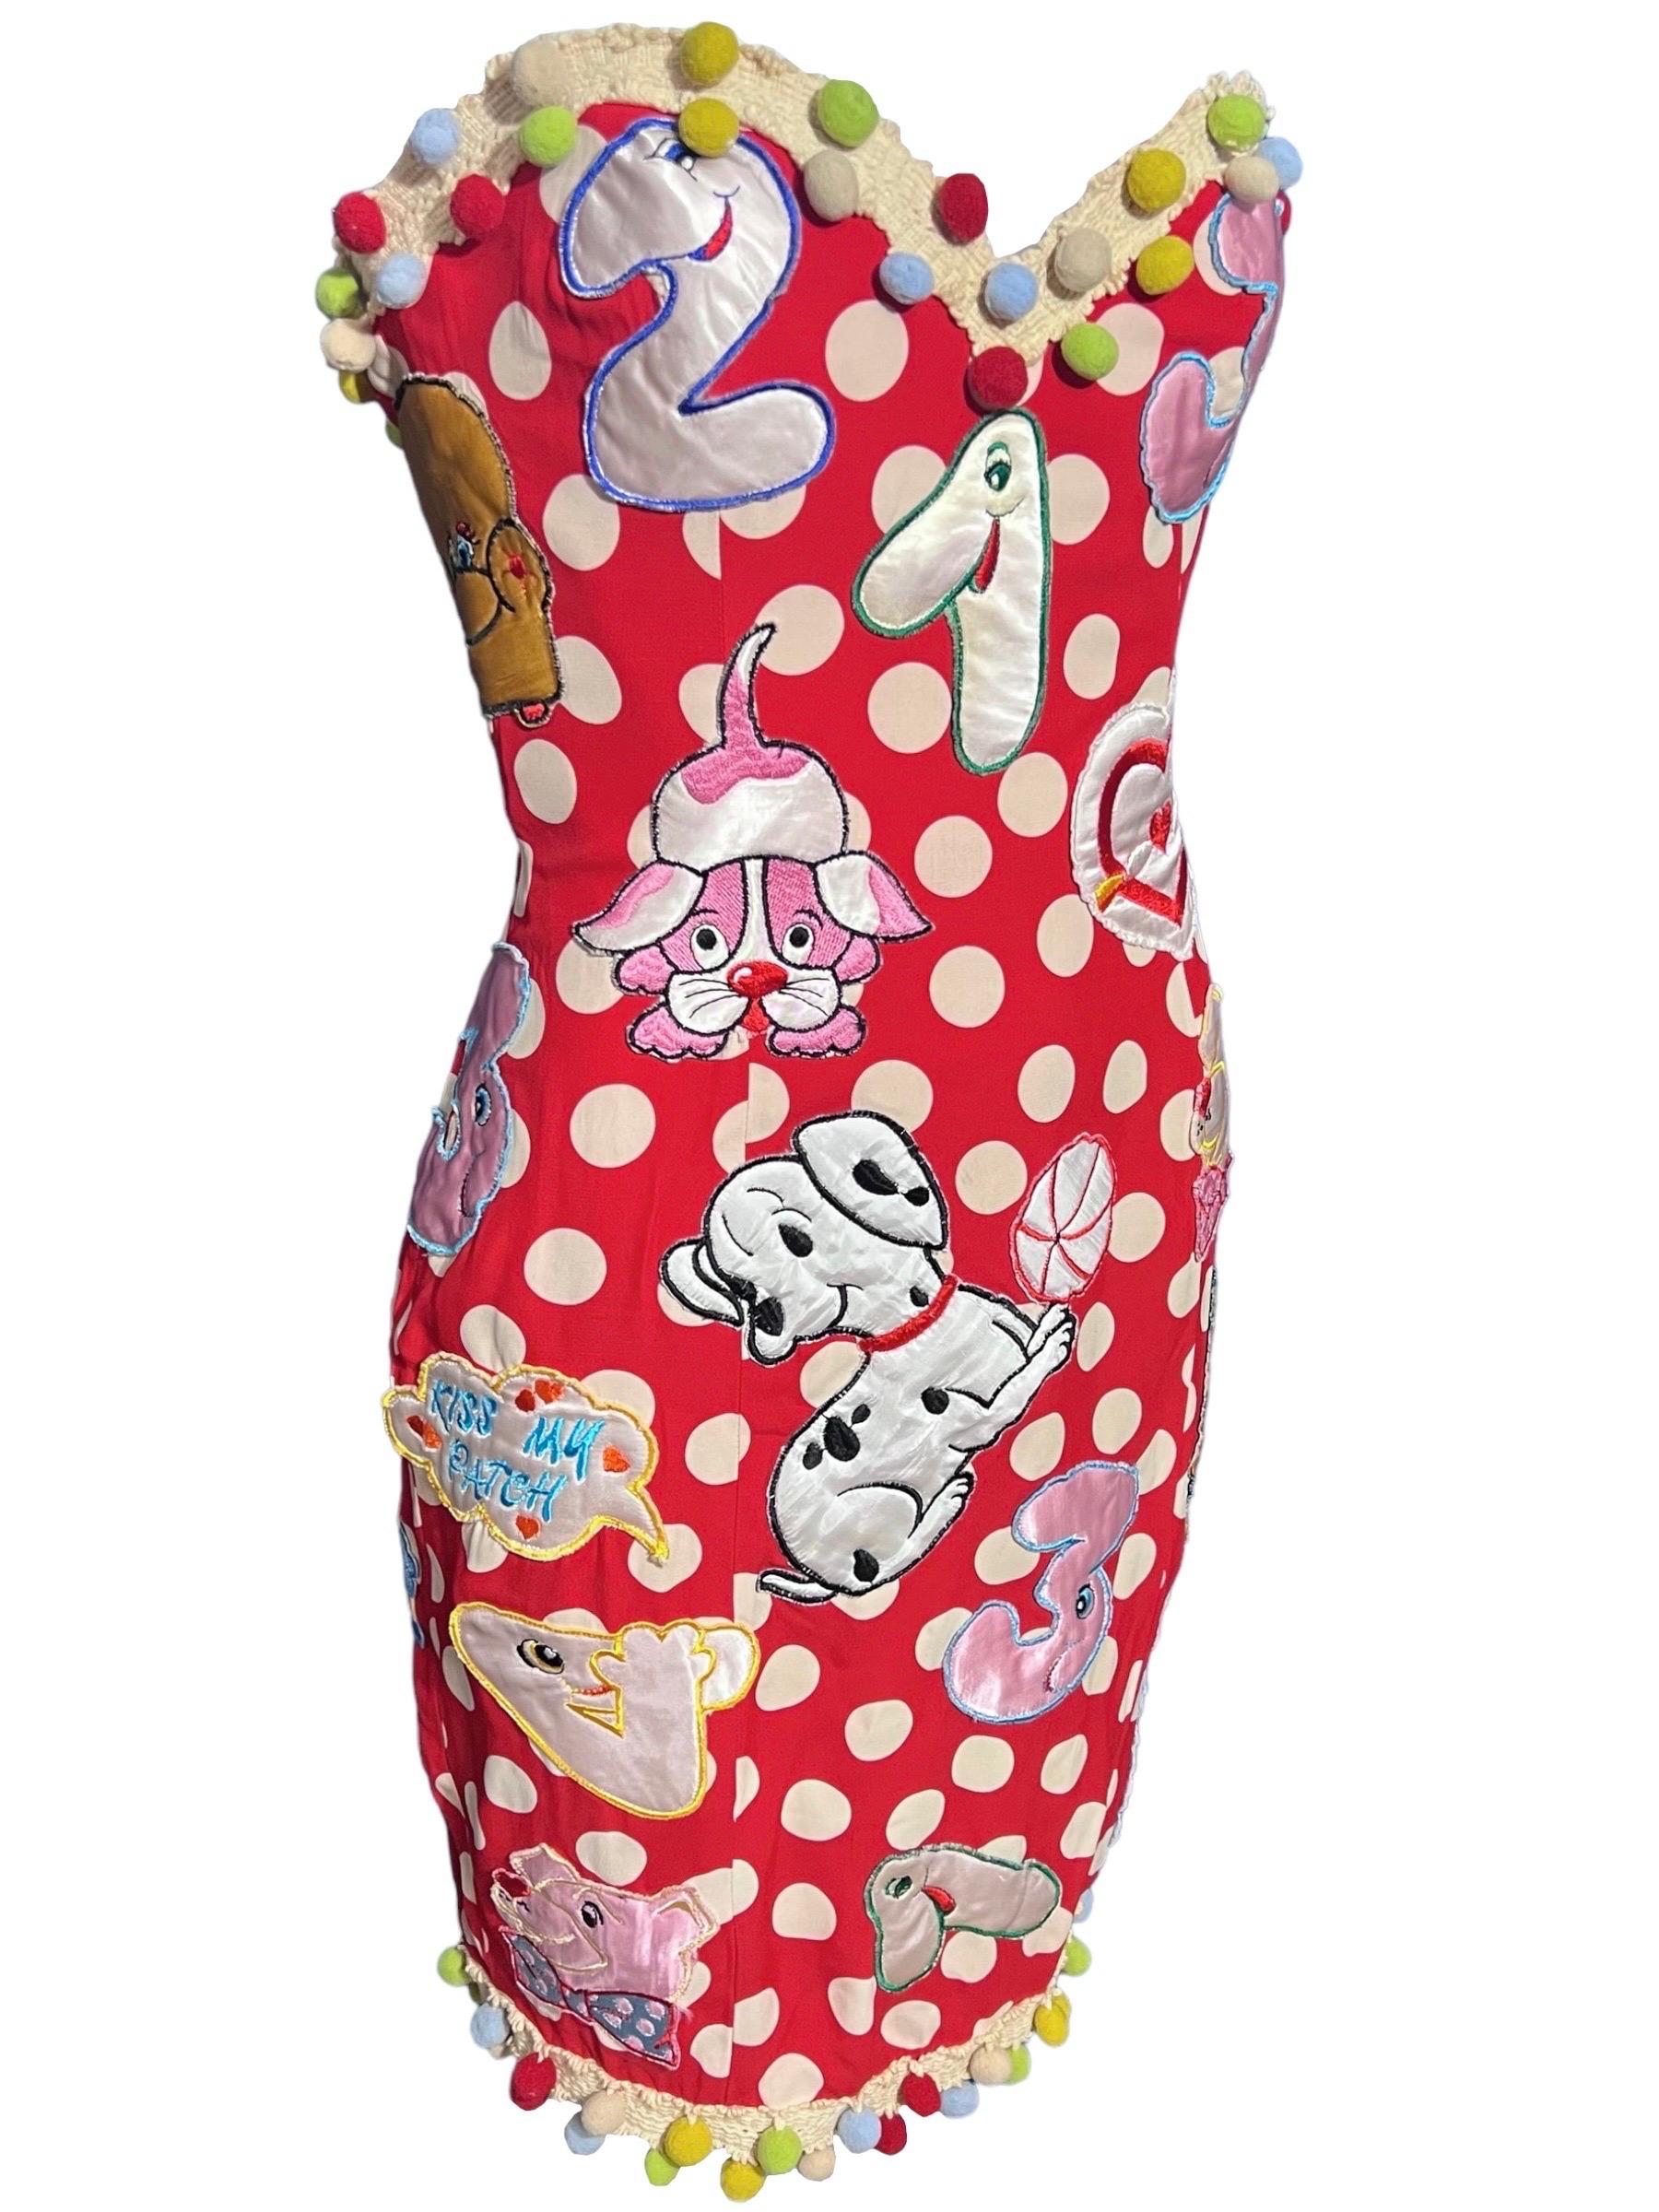 Robe bustier en soie à pois rouge et blanc cassé, brodée de patchs de dessins animés sur l'ensemble de la robe, très amusante et fantaisiste, rare chez Moschino en 1988.
Une pièce emblématique de l'histoire de Moschino.
Parmi les écussons, on trouve